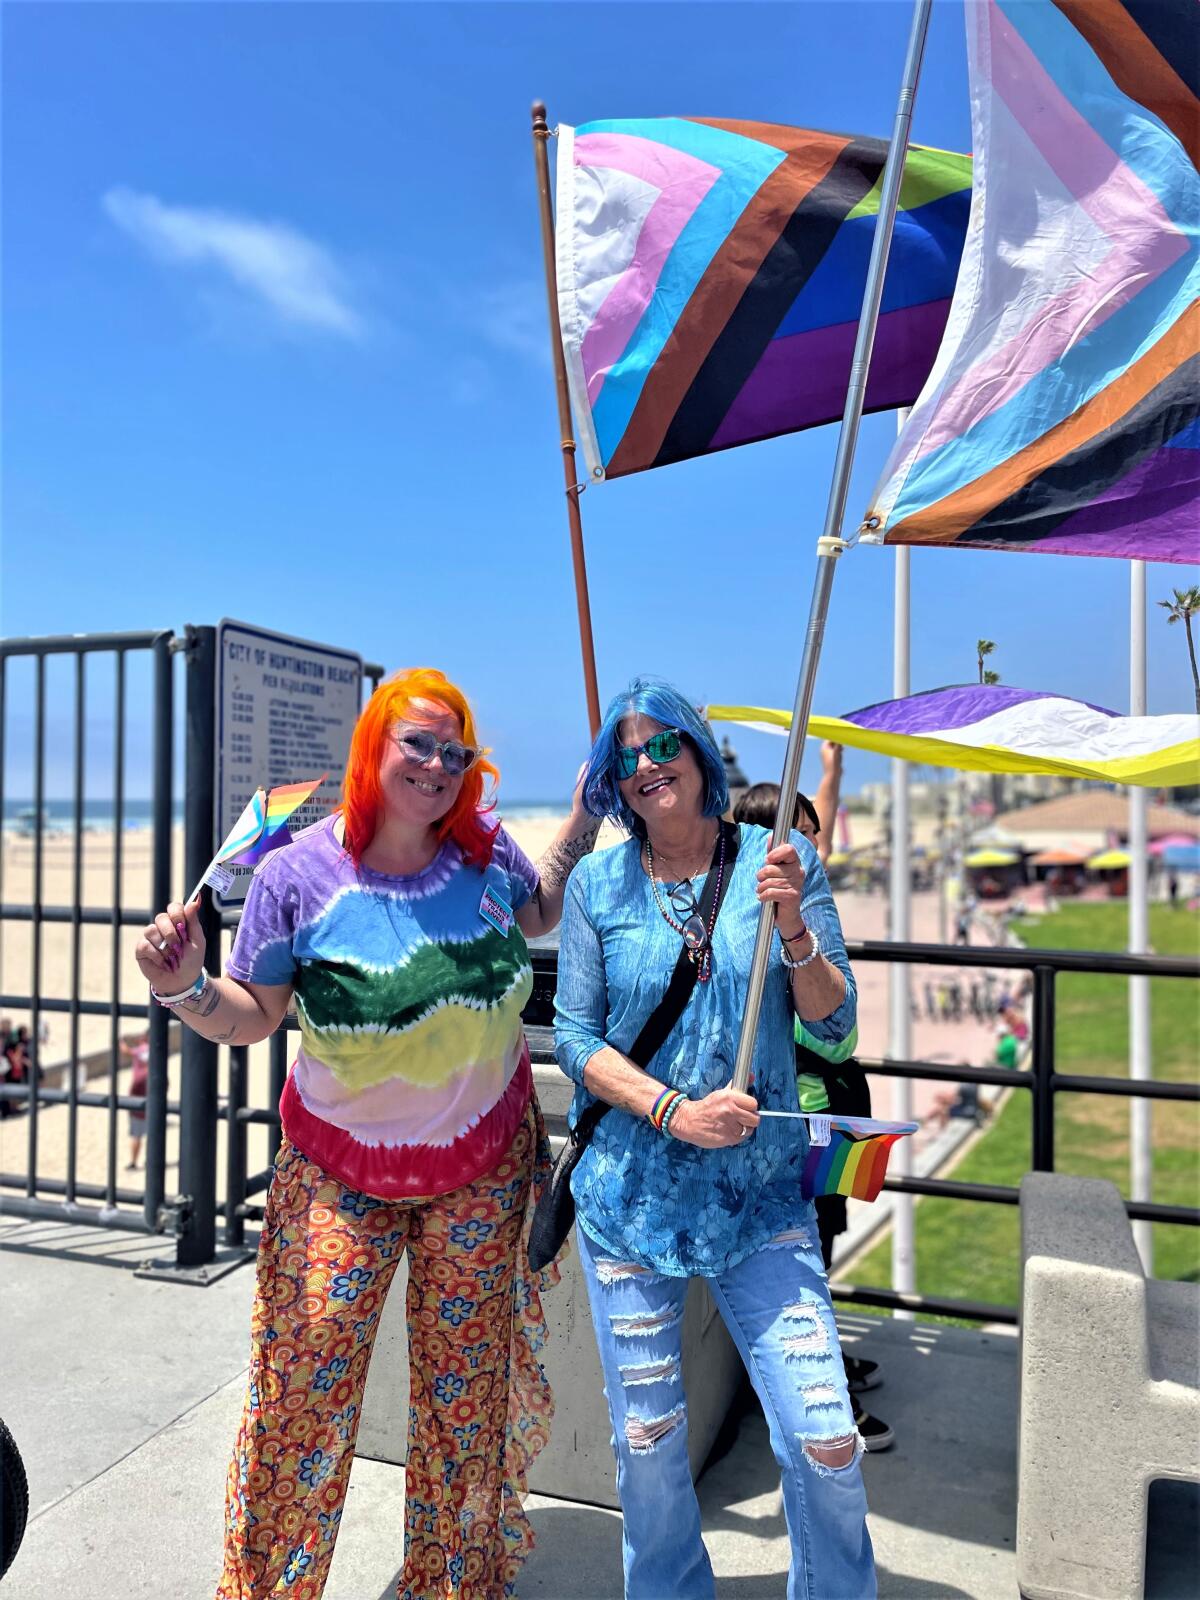 Former Huntington Beach resident Ashley Williamson, left, with Laguna Beach's Sally Sanders at the Huntington Beach Pier.